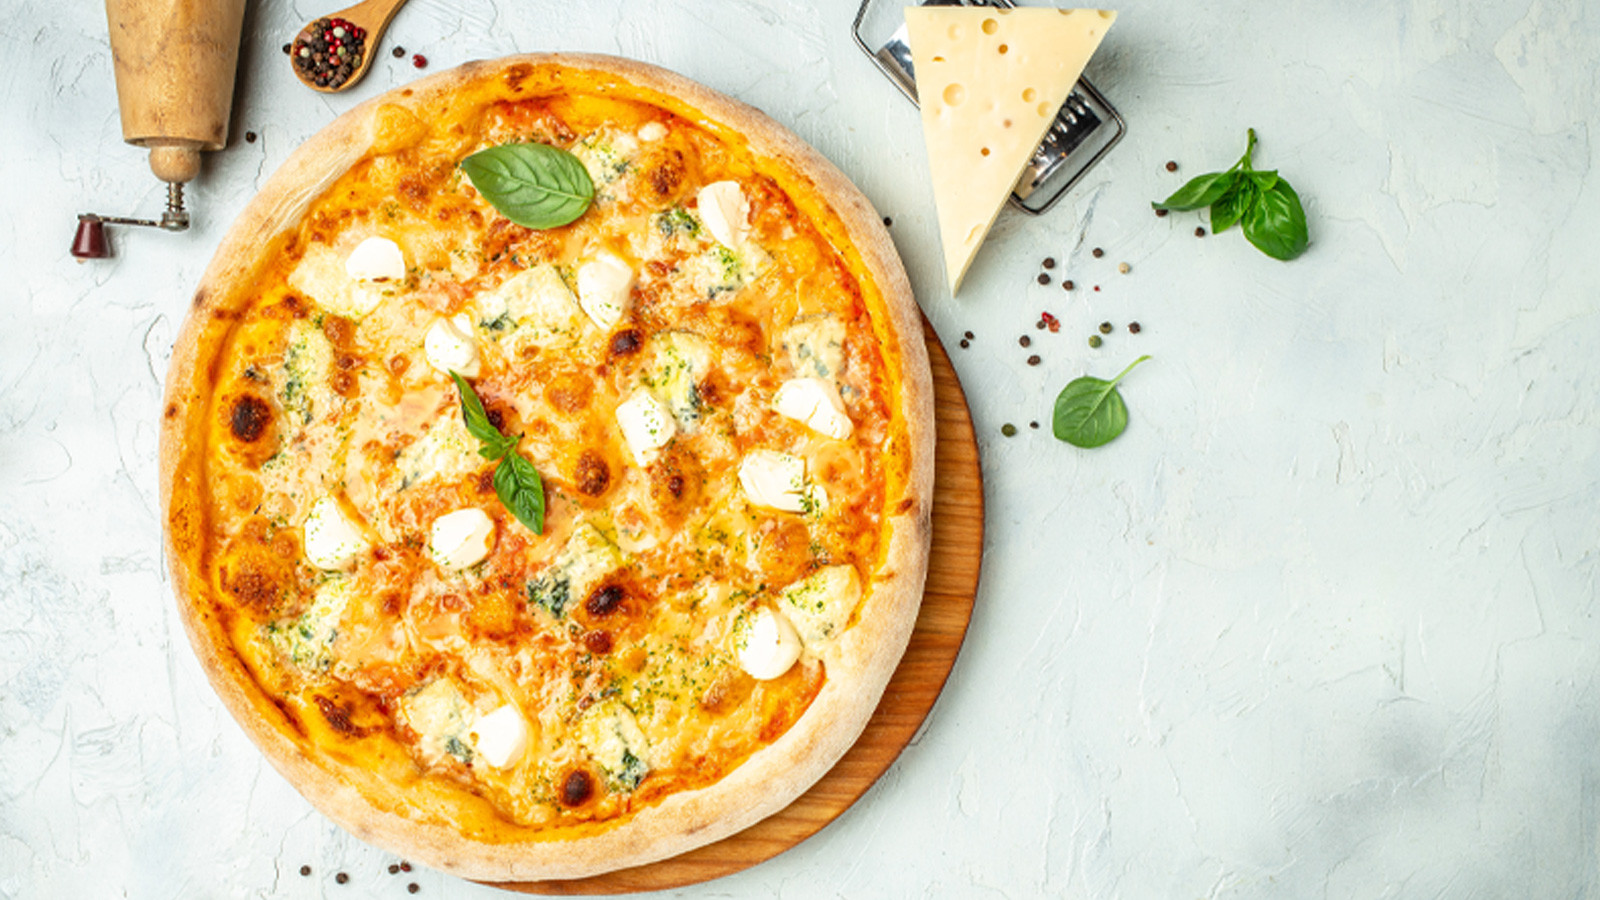 En ideal pizza çeşitleri arasında domatesli, peynirli, soğanlı, deniz ürünü içerenleri ve mantarlı olanları tercih edebilirsiniz. 